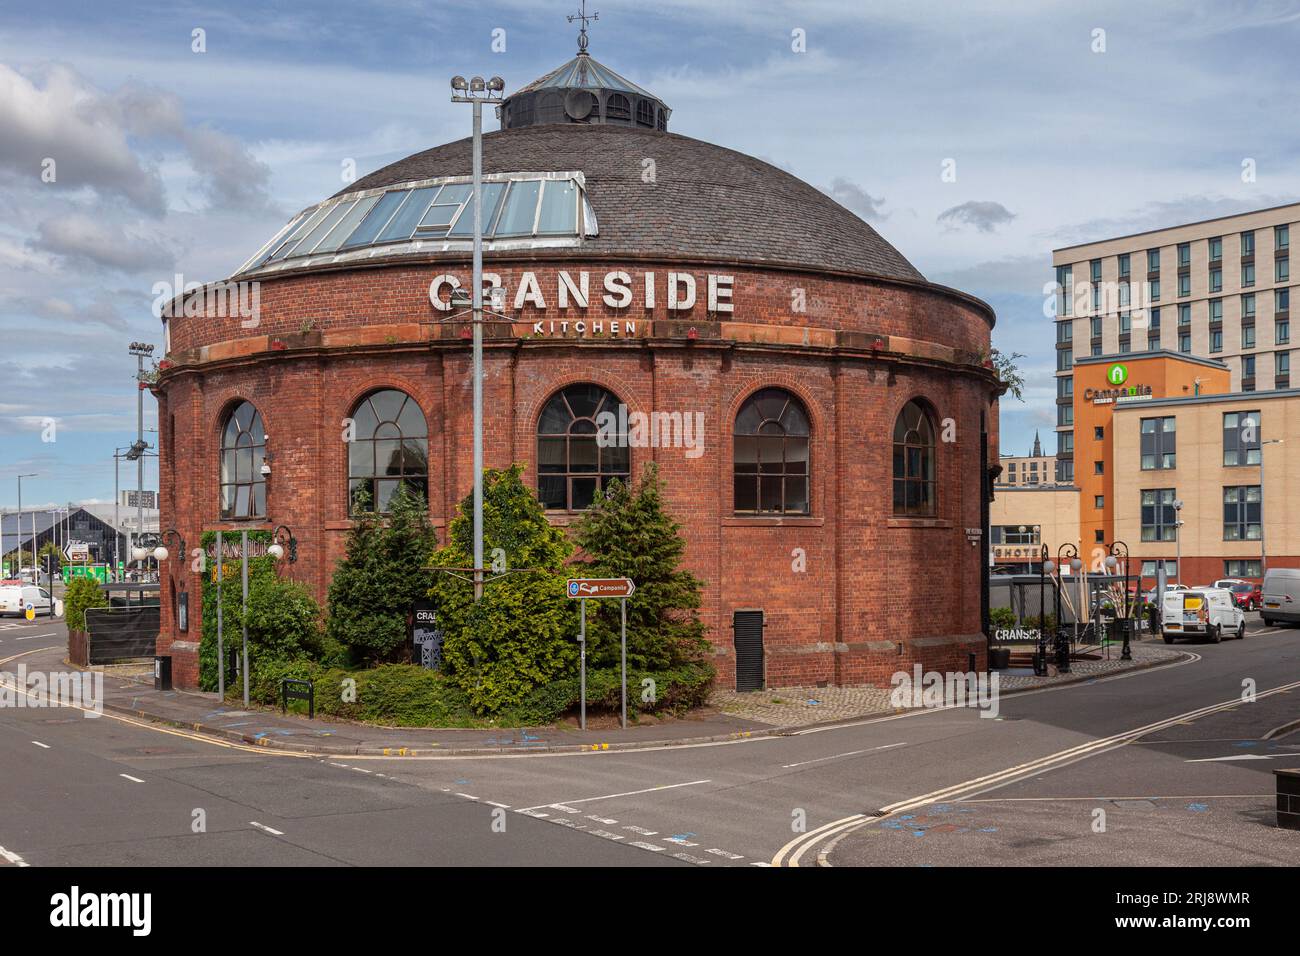 Cranside Kitchen, ein Restaurant und Veranstaltungsort für Hochzeiten in der North Rotunda, einem denkmalgeschützten Gebäude aus der viktorianischen Ära. Finnieston Quay, Glasgow, Schottland. Stockfoto